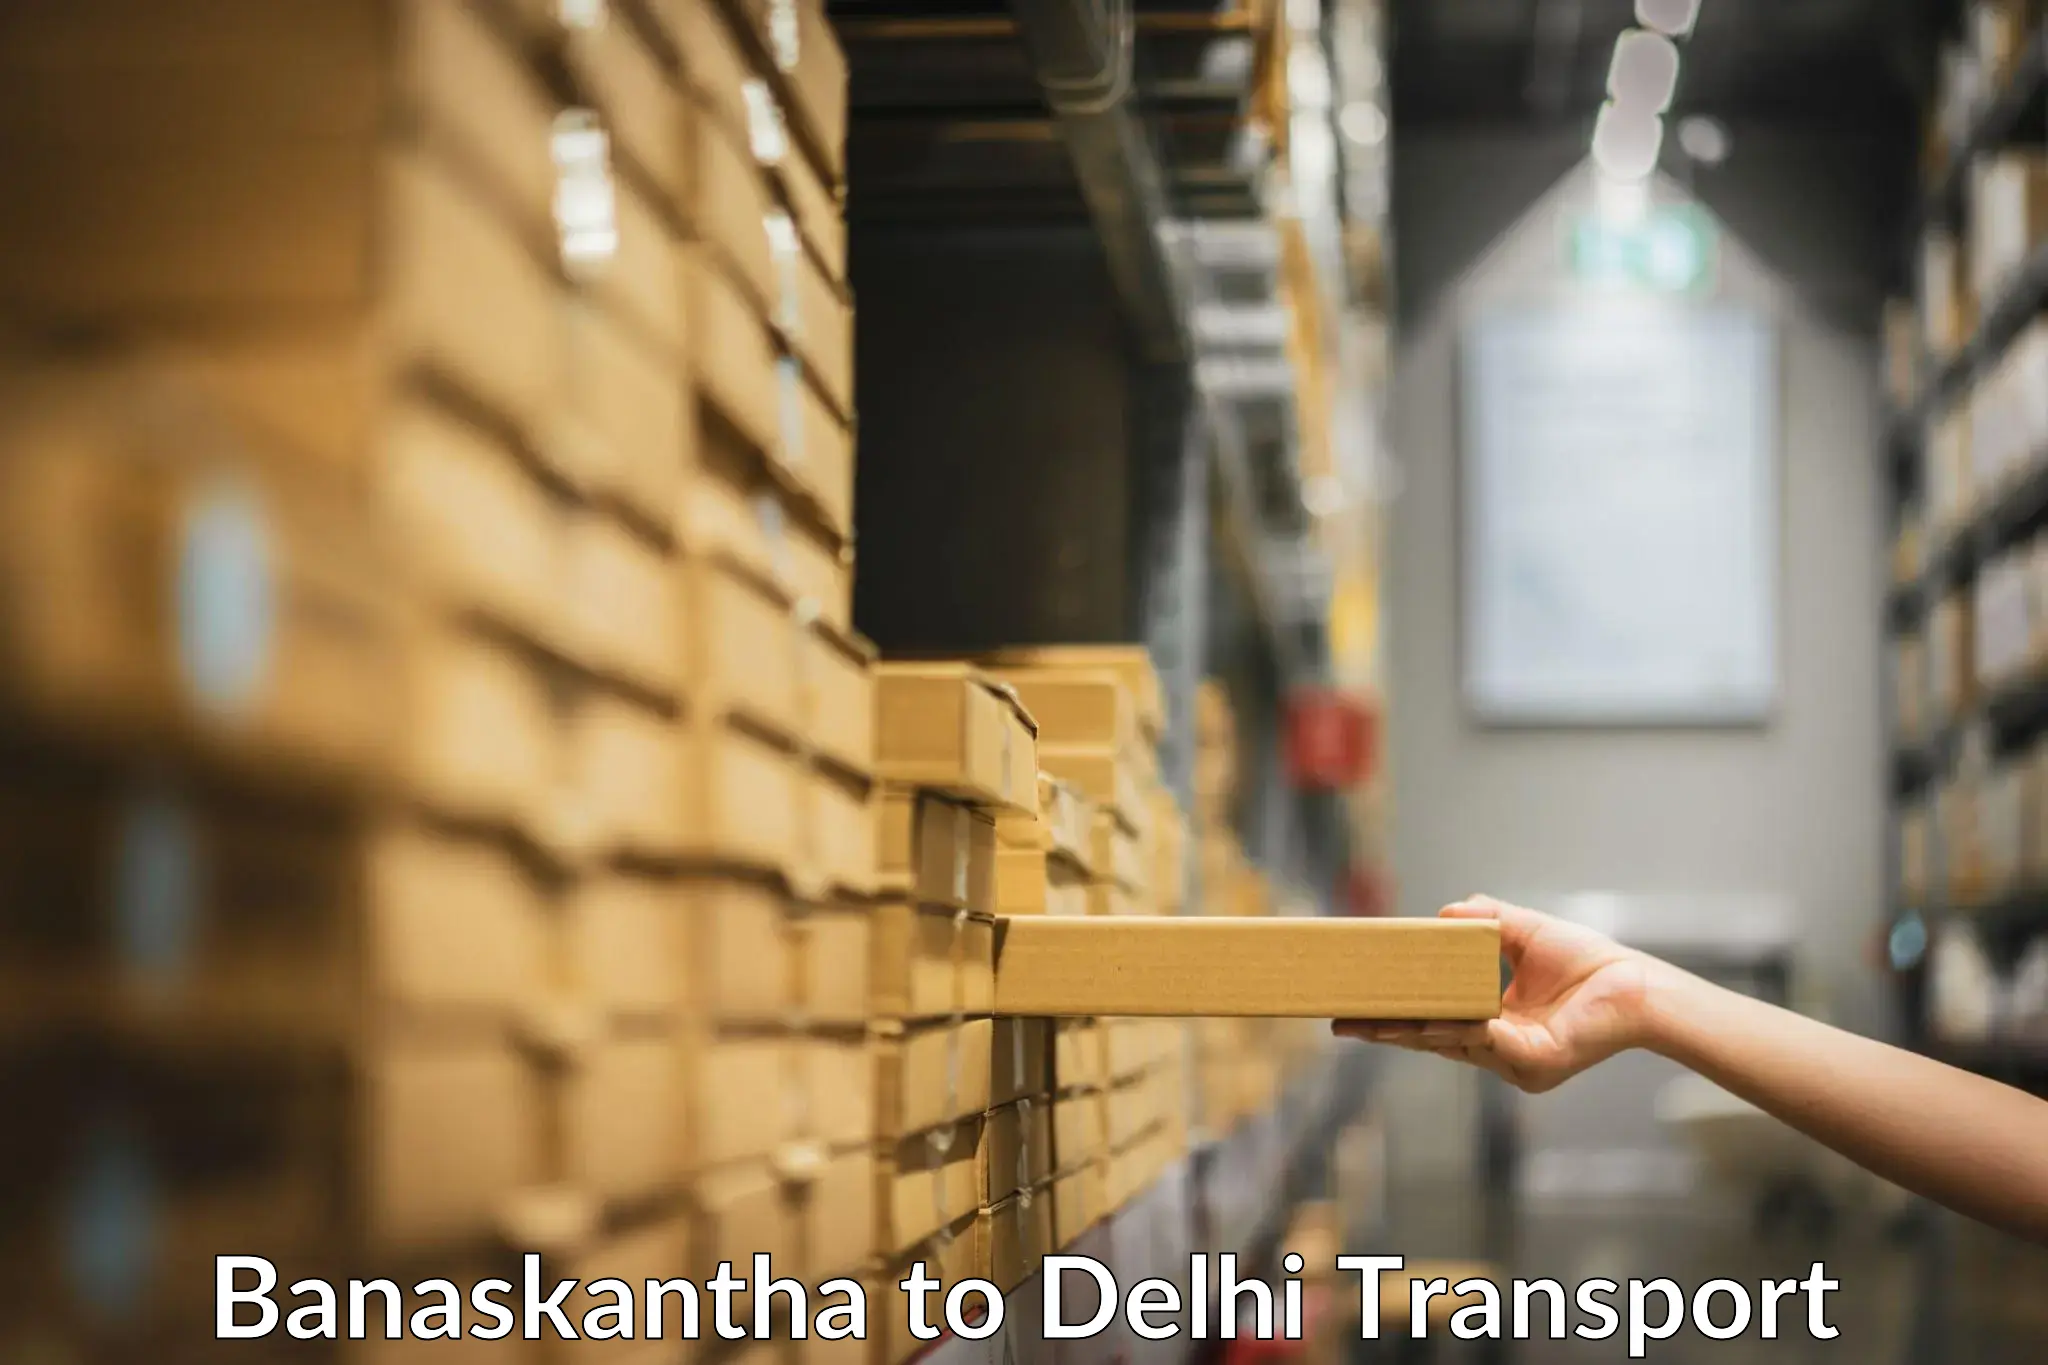 Parcel transport services Banaskantha to NIT Delhi